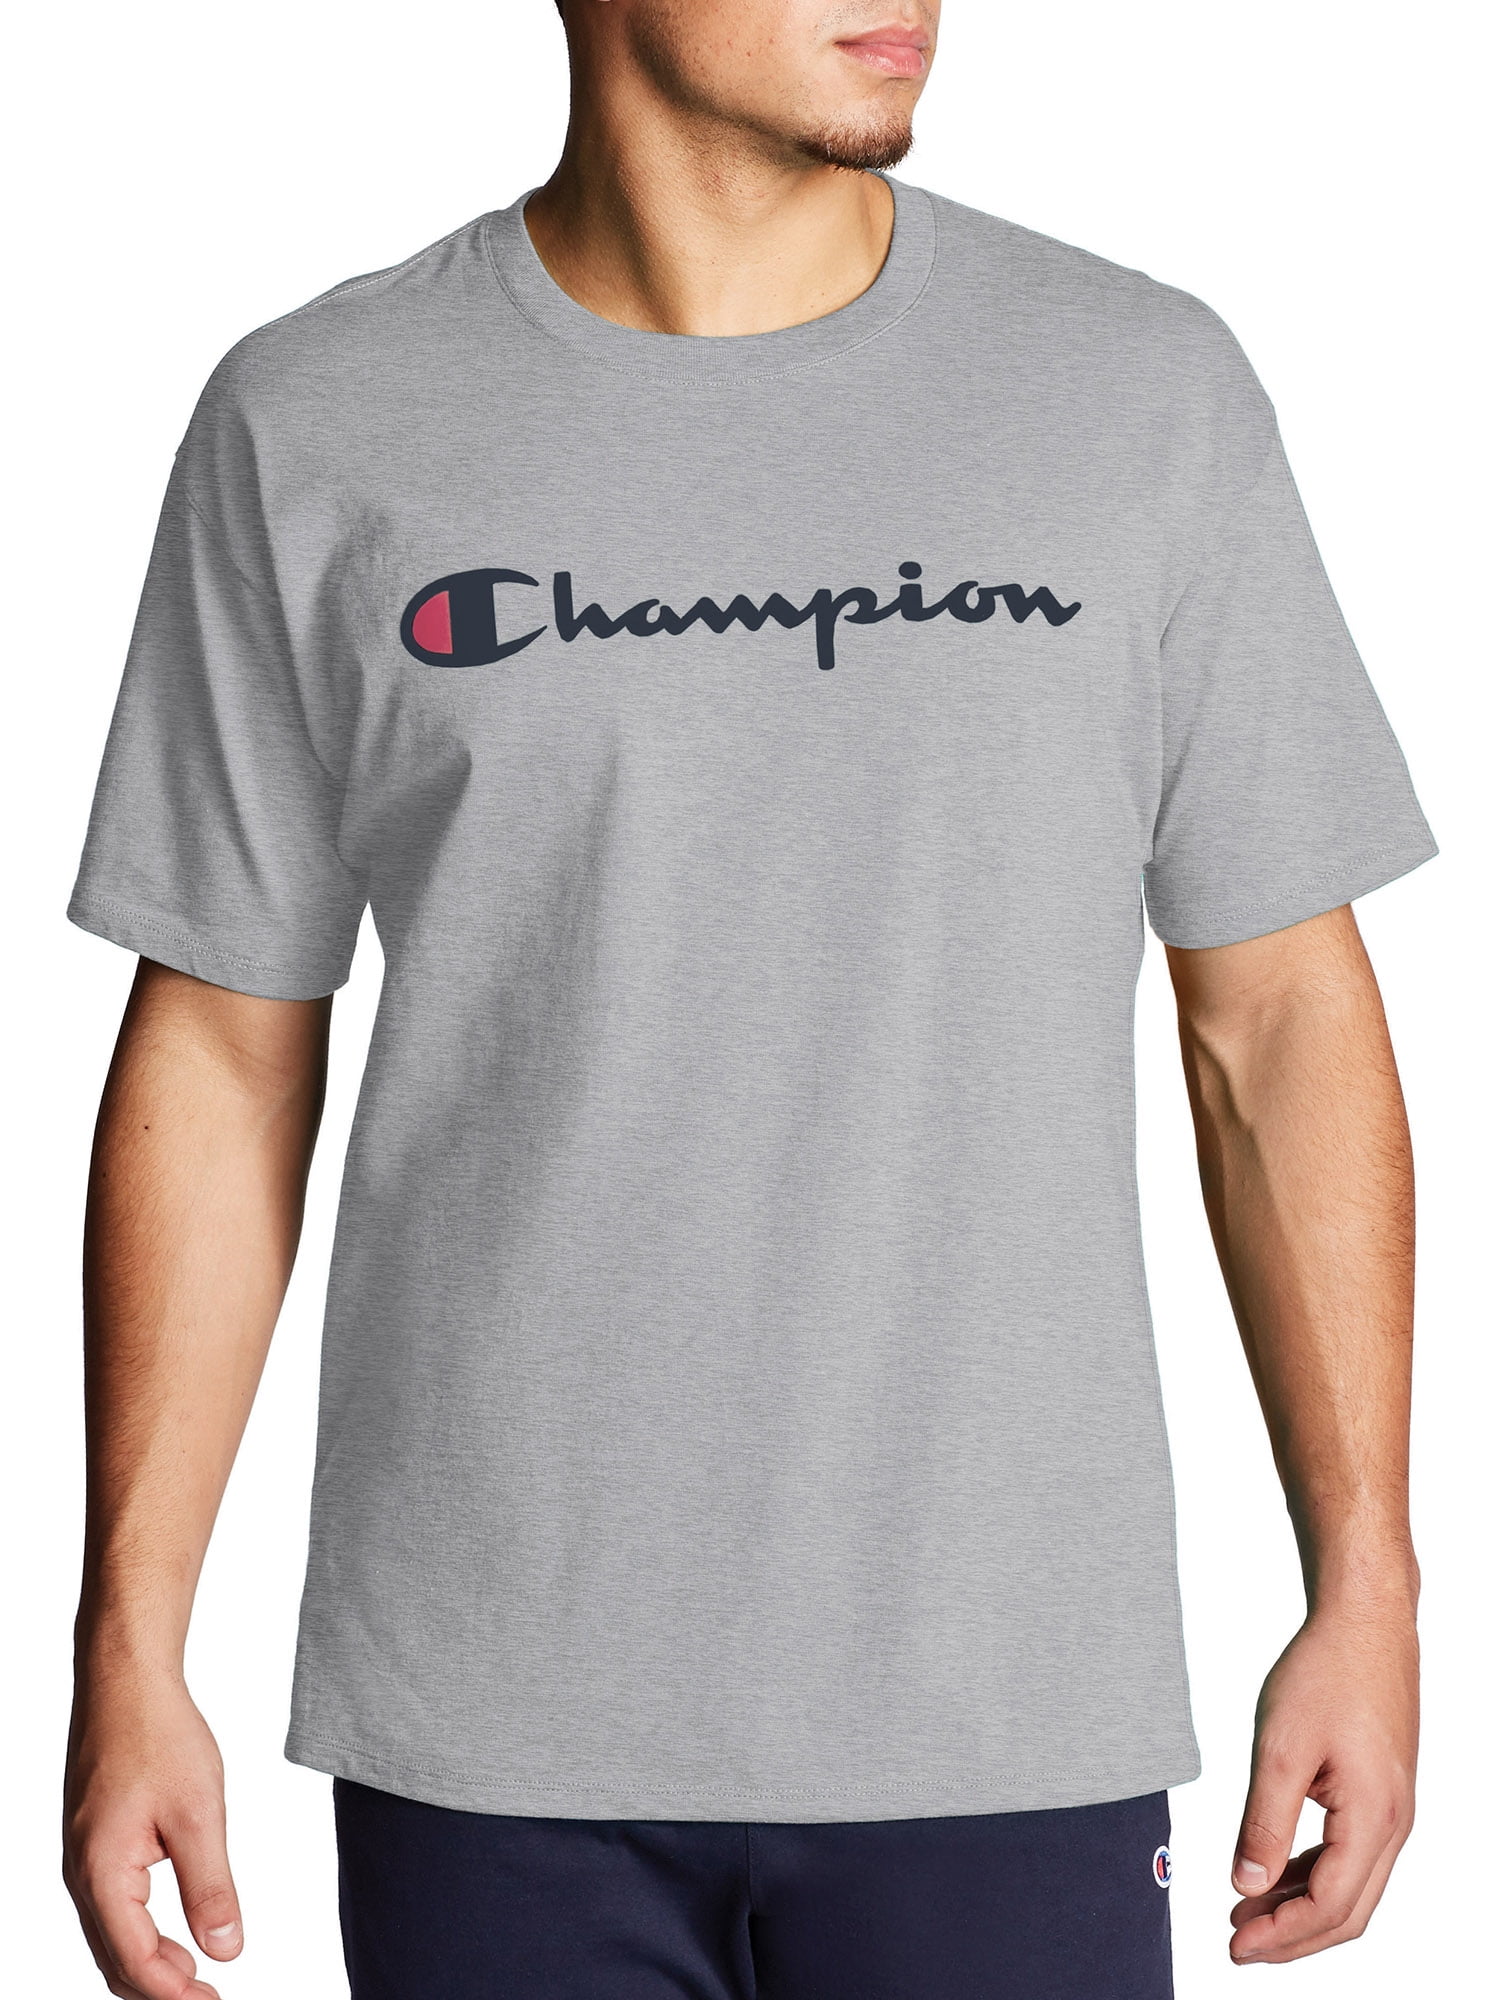 champion shirt at walmart